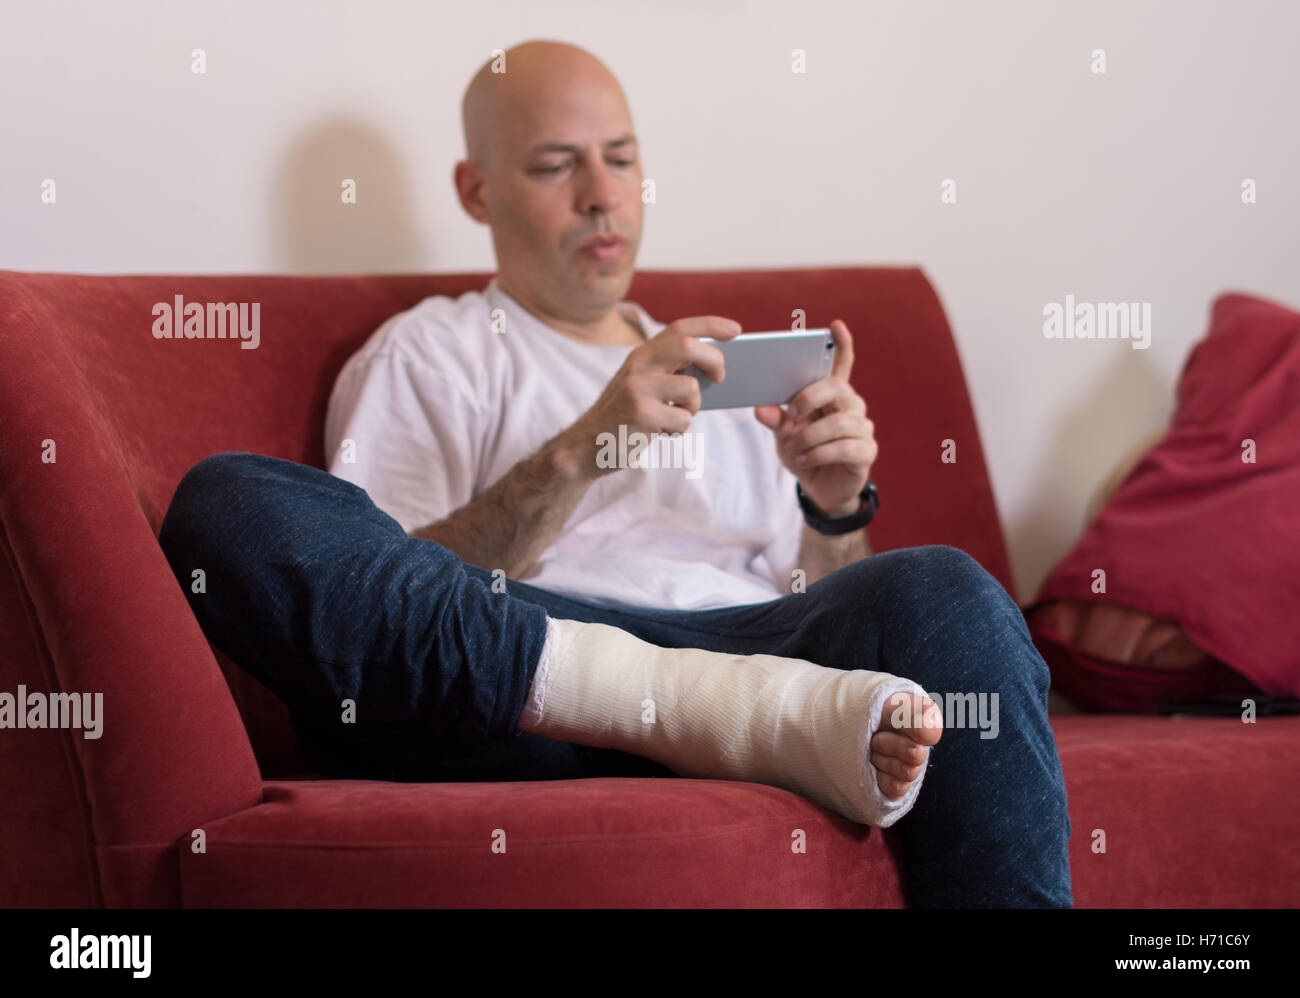 Jeune homme avec une cheville cassée et un blanc moulé sur sa jambe, assis sur un canapé rouge, naviguer sur le web sur son téléphone (selective focus Banque D'Images